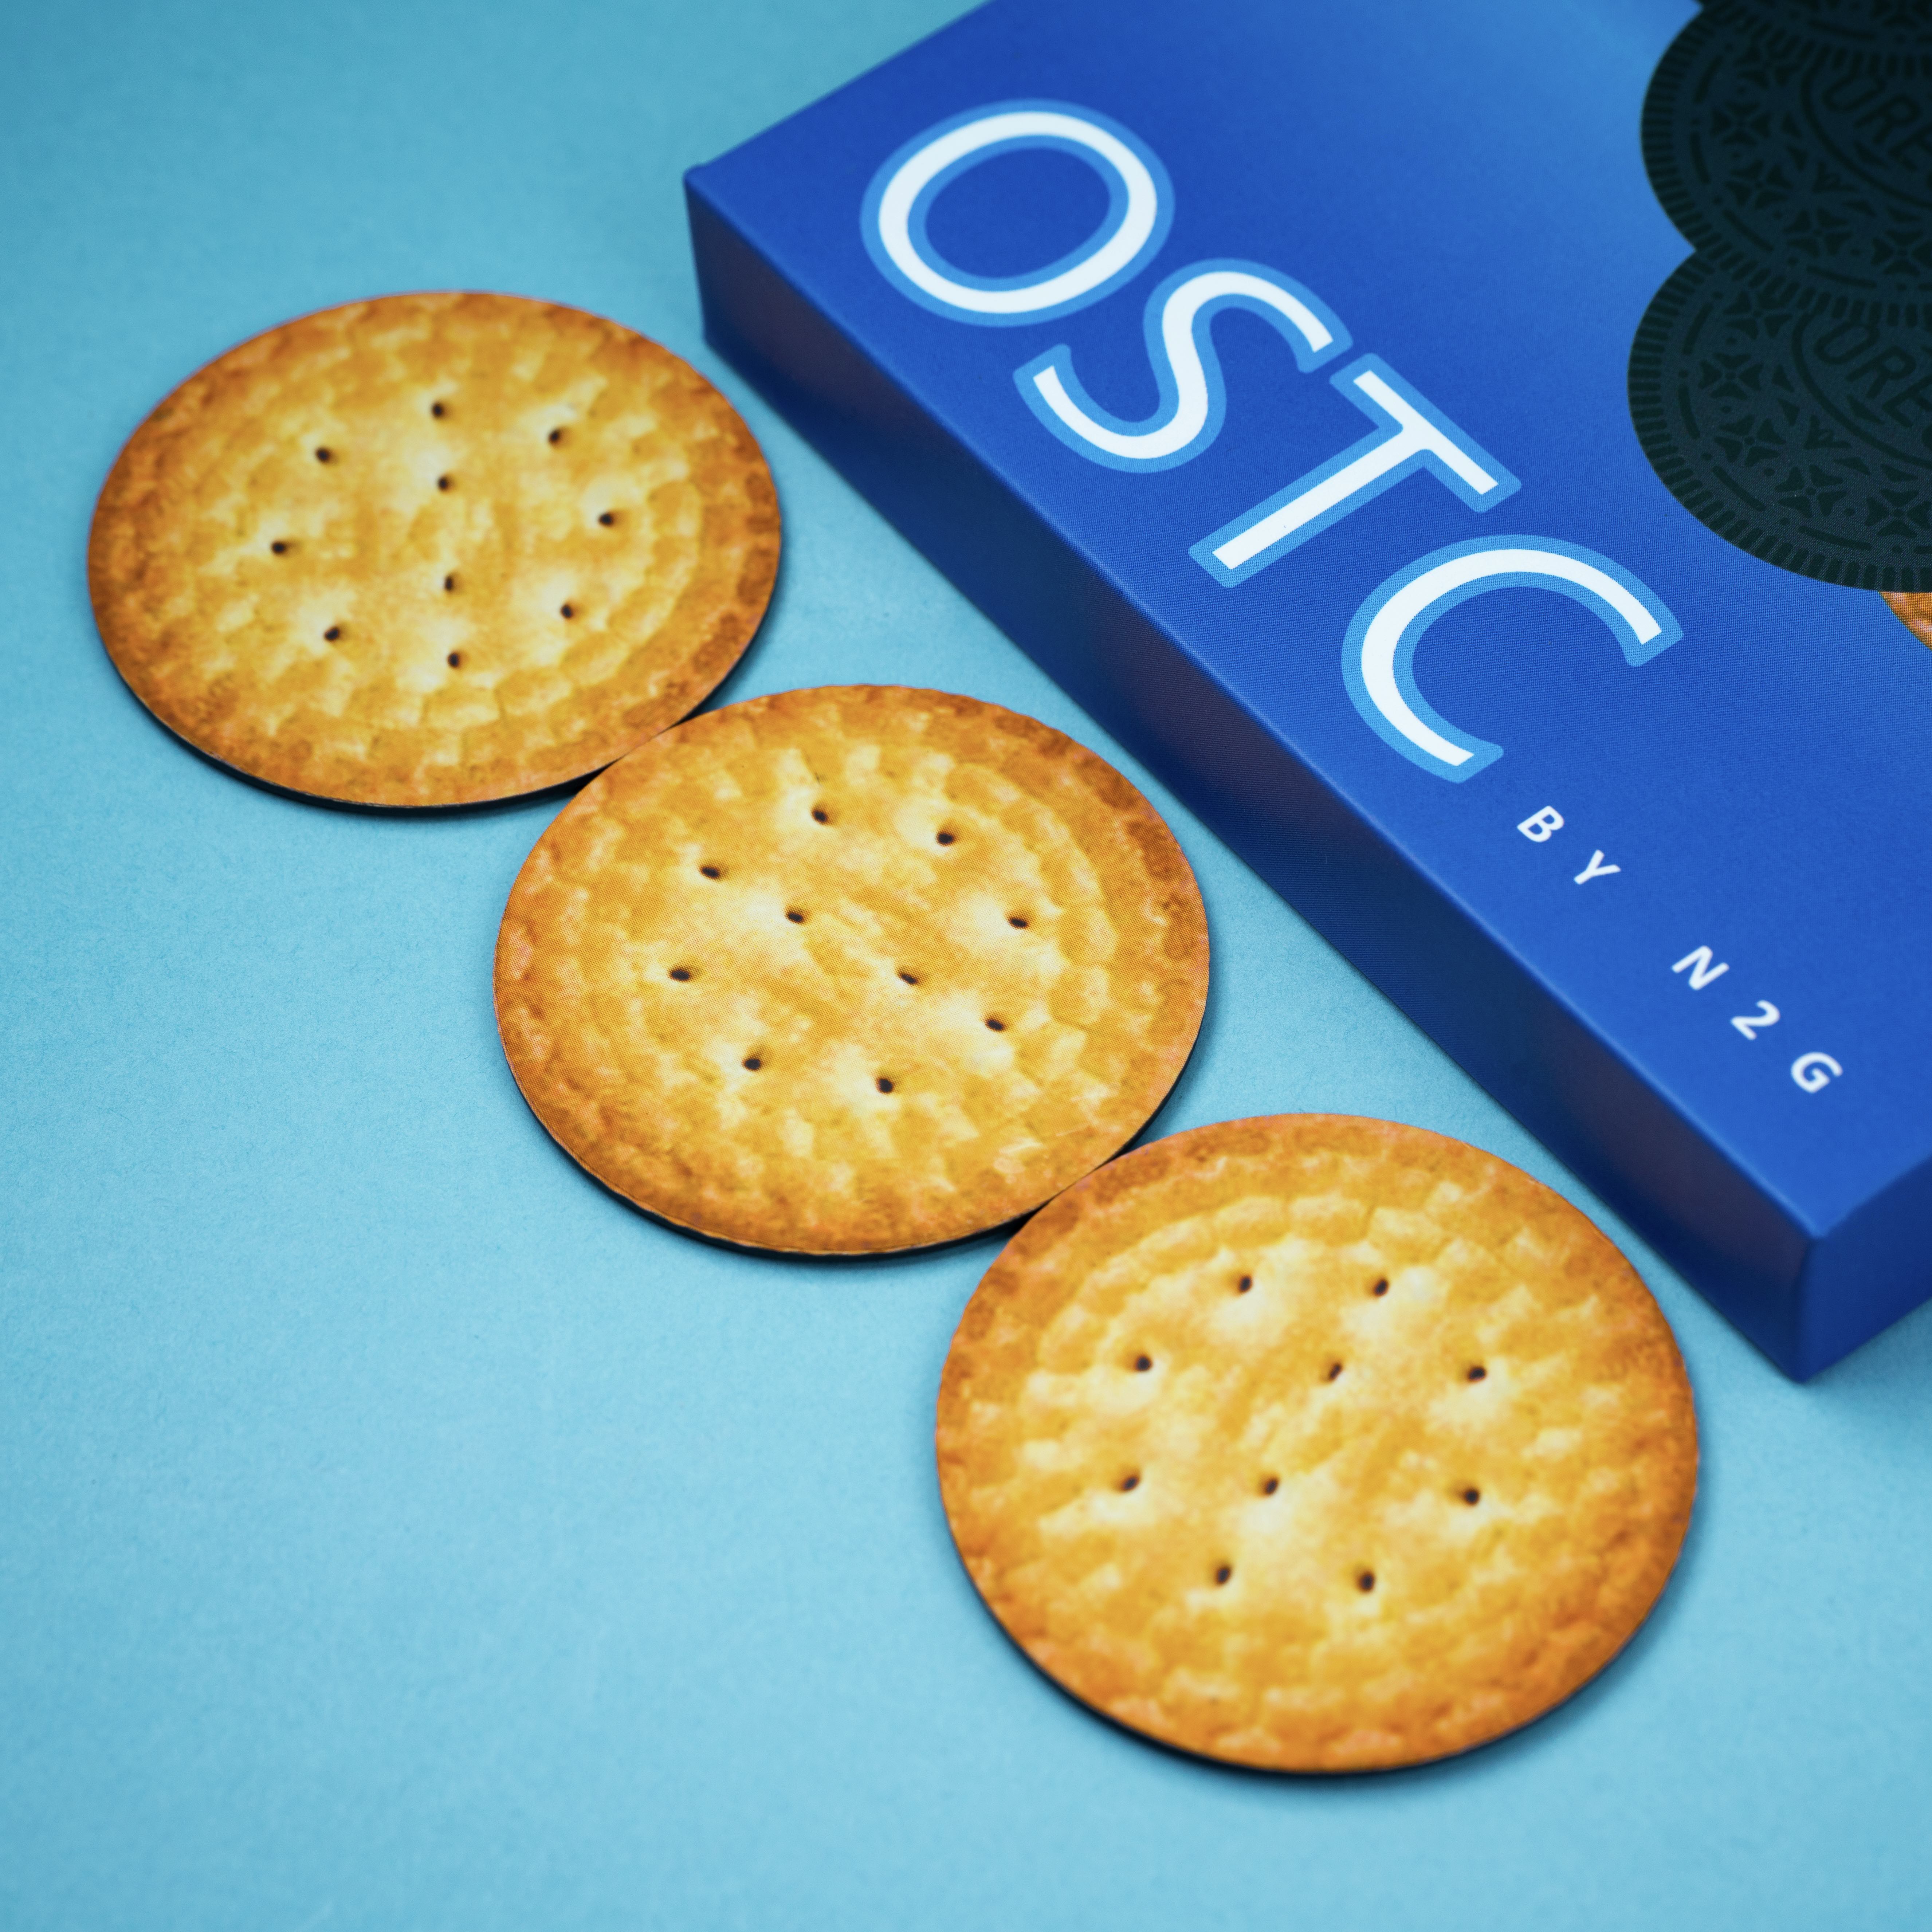 OSTC by N2G-N2G Presents